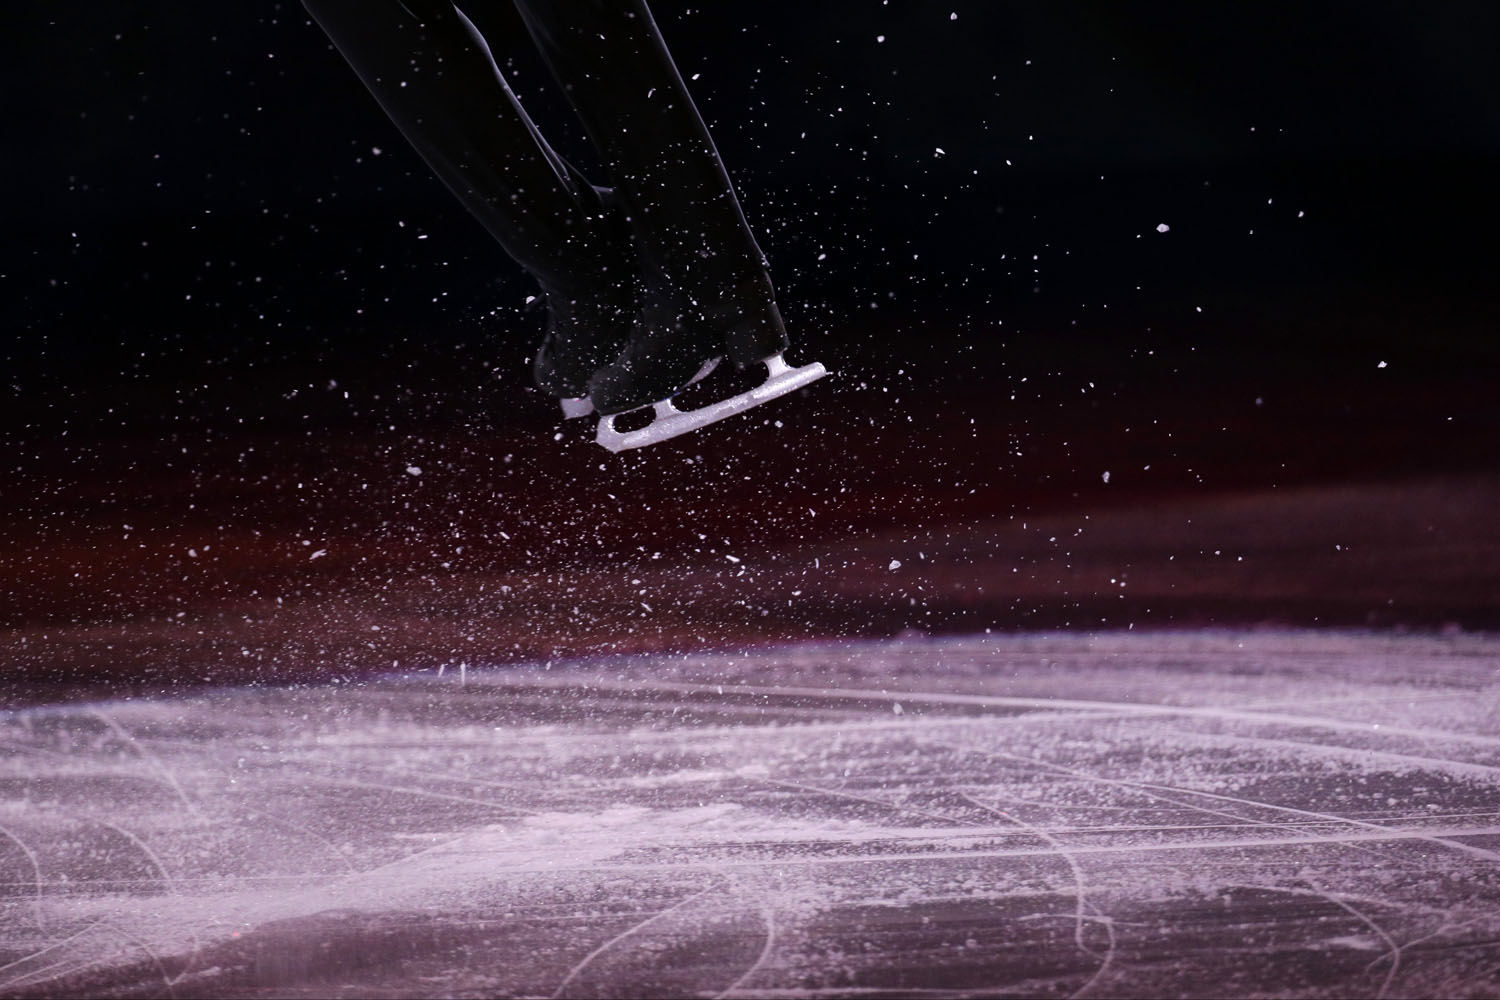 APTOPIX Sochi Olympics Figure Skating